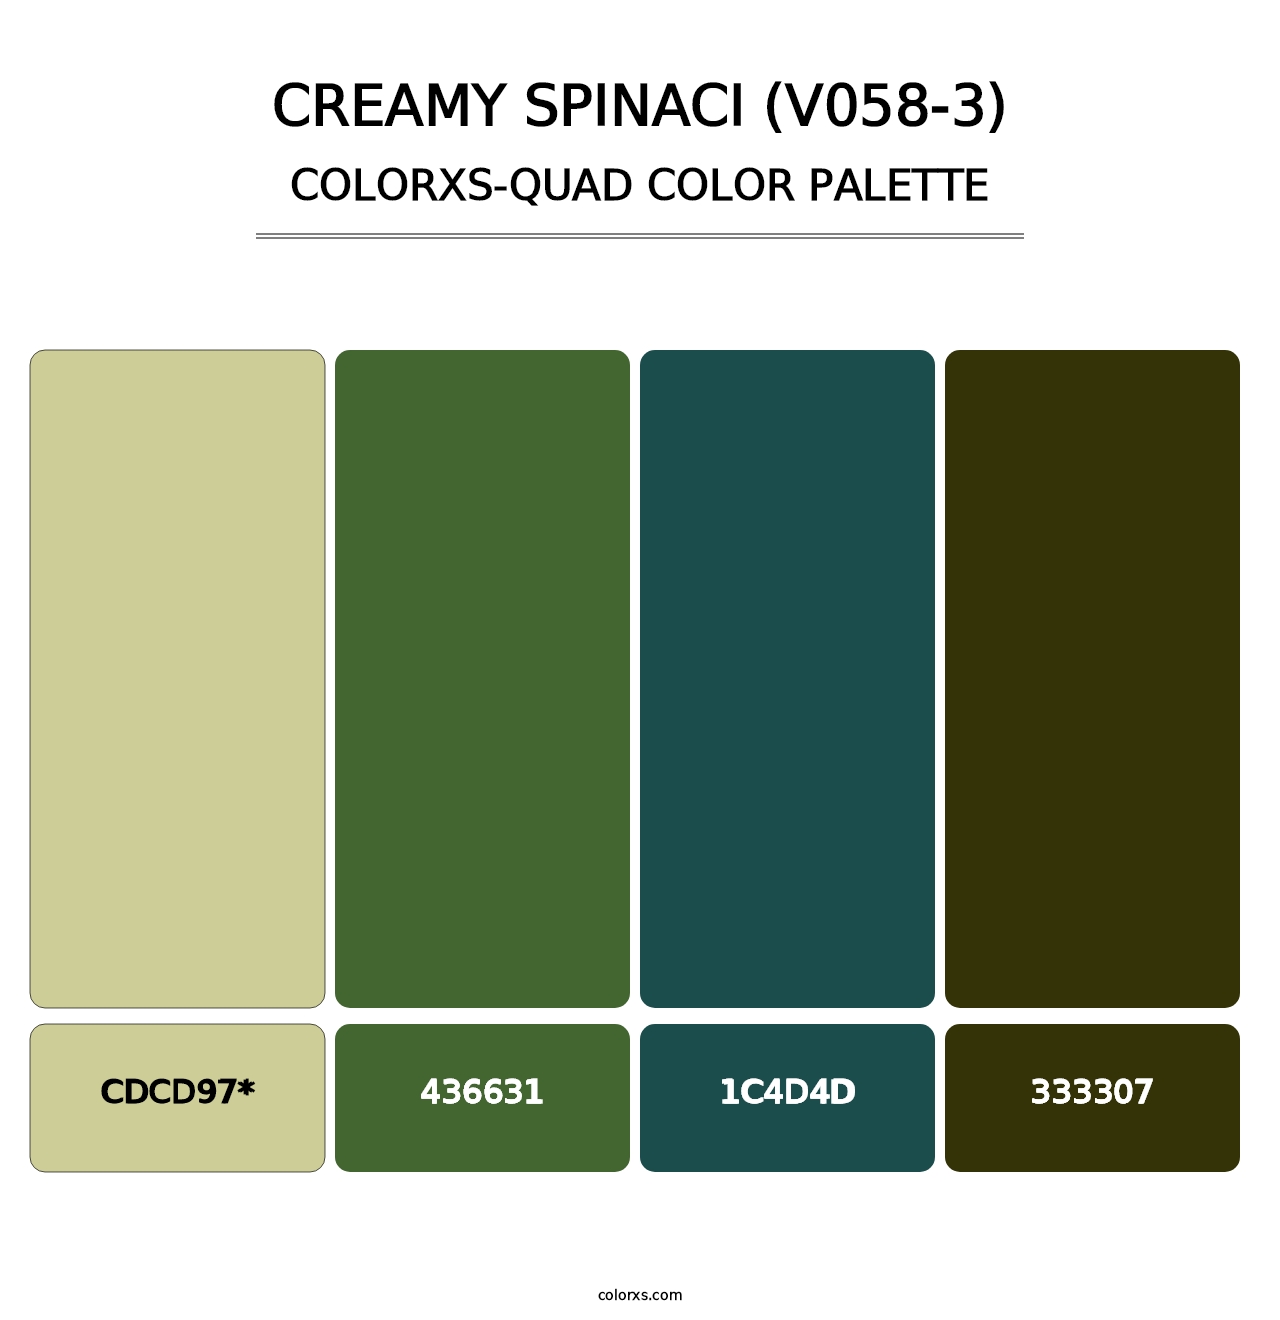 Creamy Spinaci (V058-3) - Colorxs Quad Palette